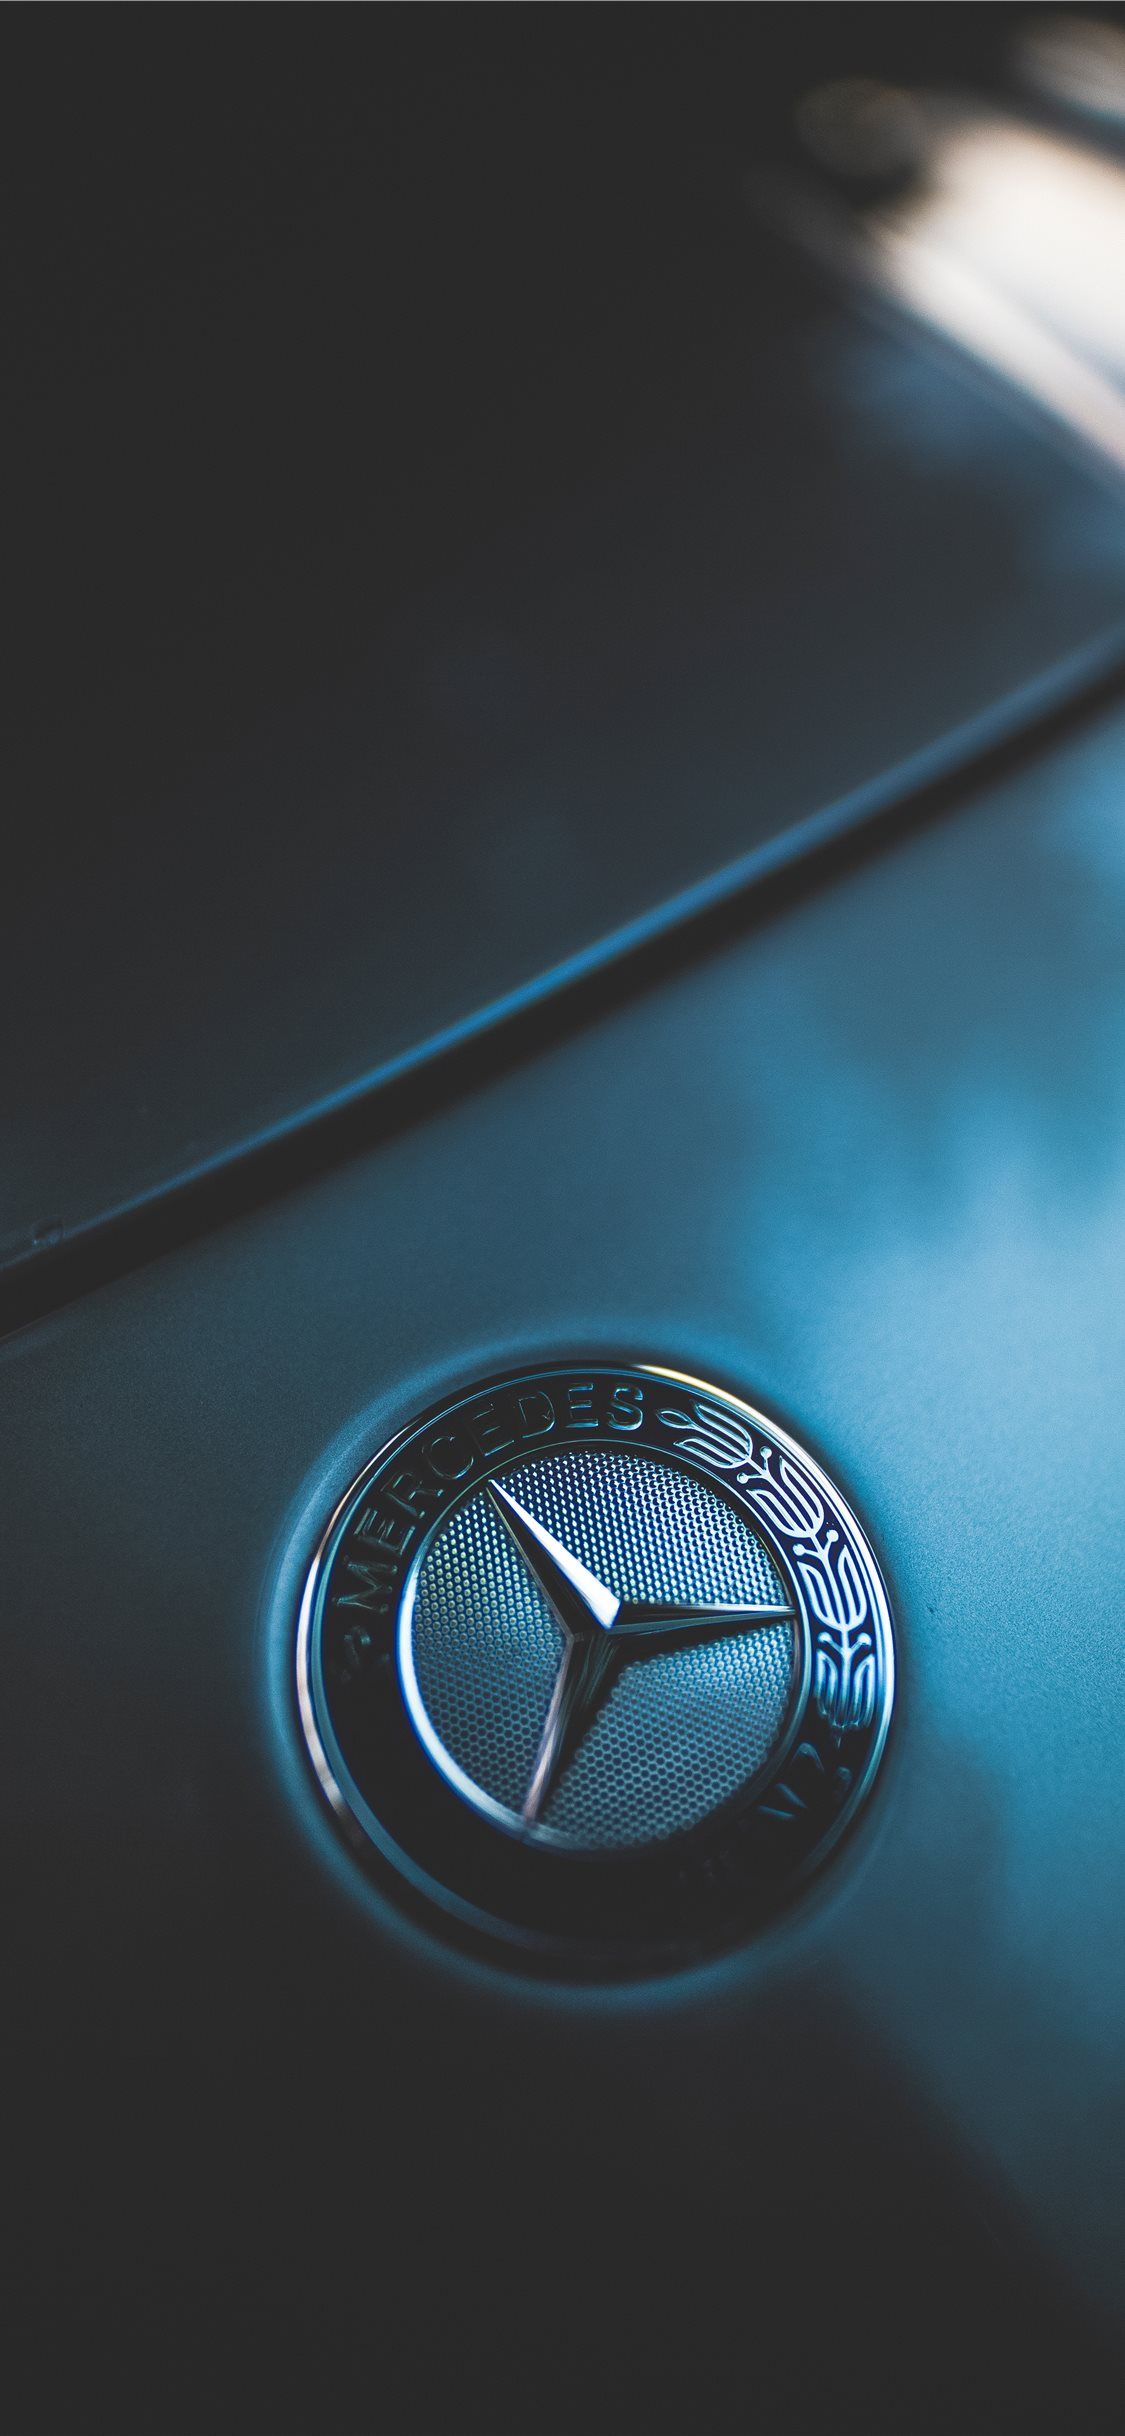 closeup photo of Mercedes Benz emblem iPhone X Wallpaper Free